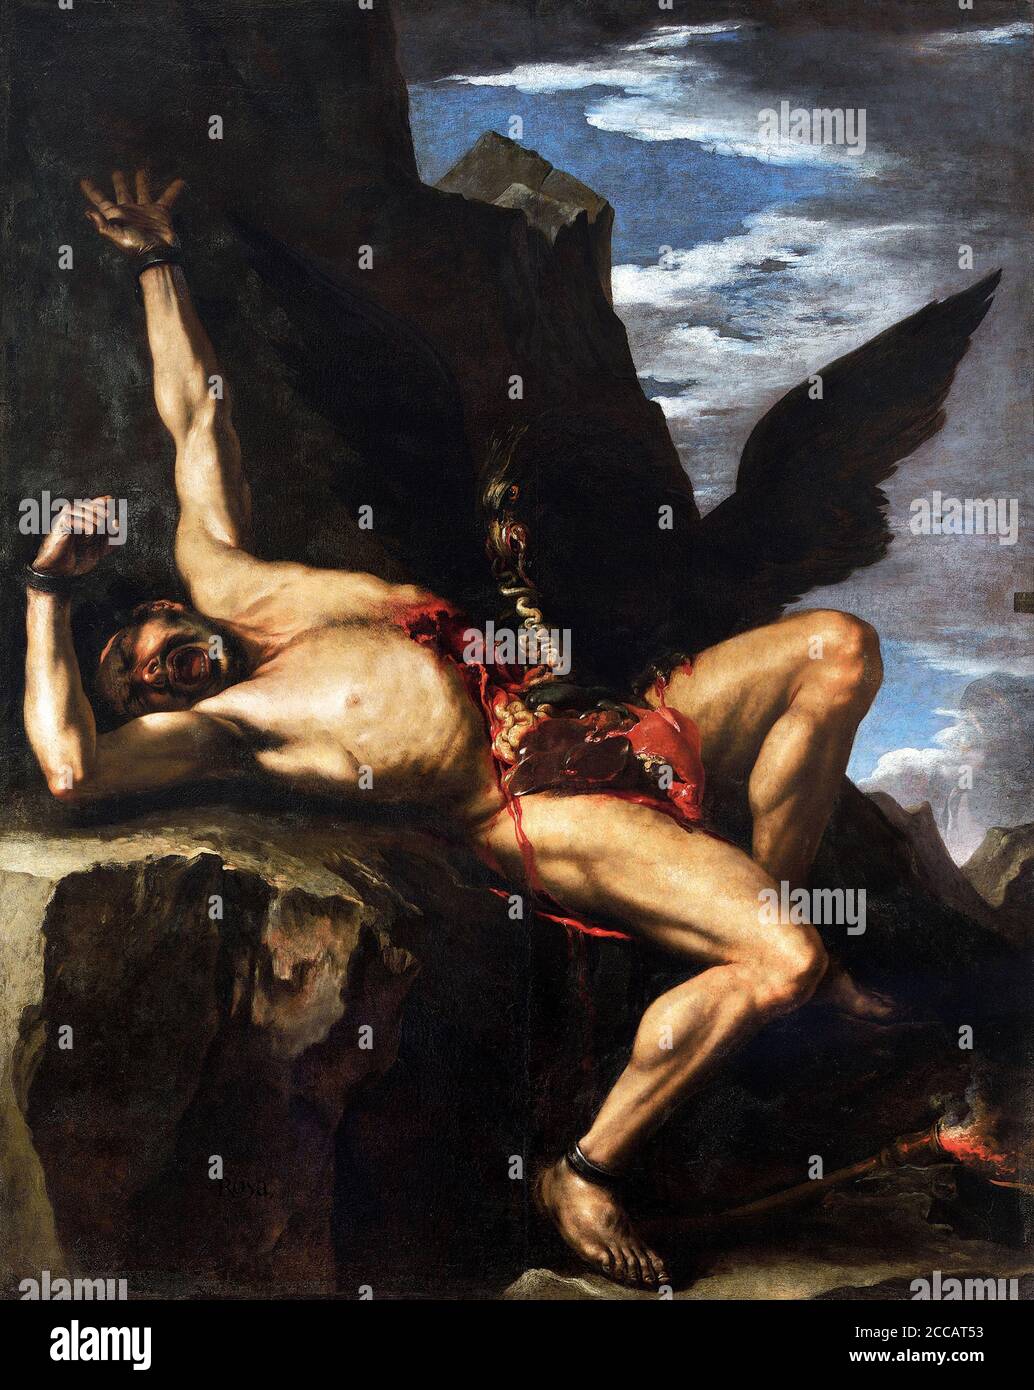 The Torture of Prometheus. Museum: Galleria Nazionale d'Arte Antica, Rome. Author: Salvatore Rosa. Stock Photo